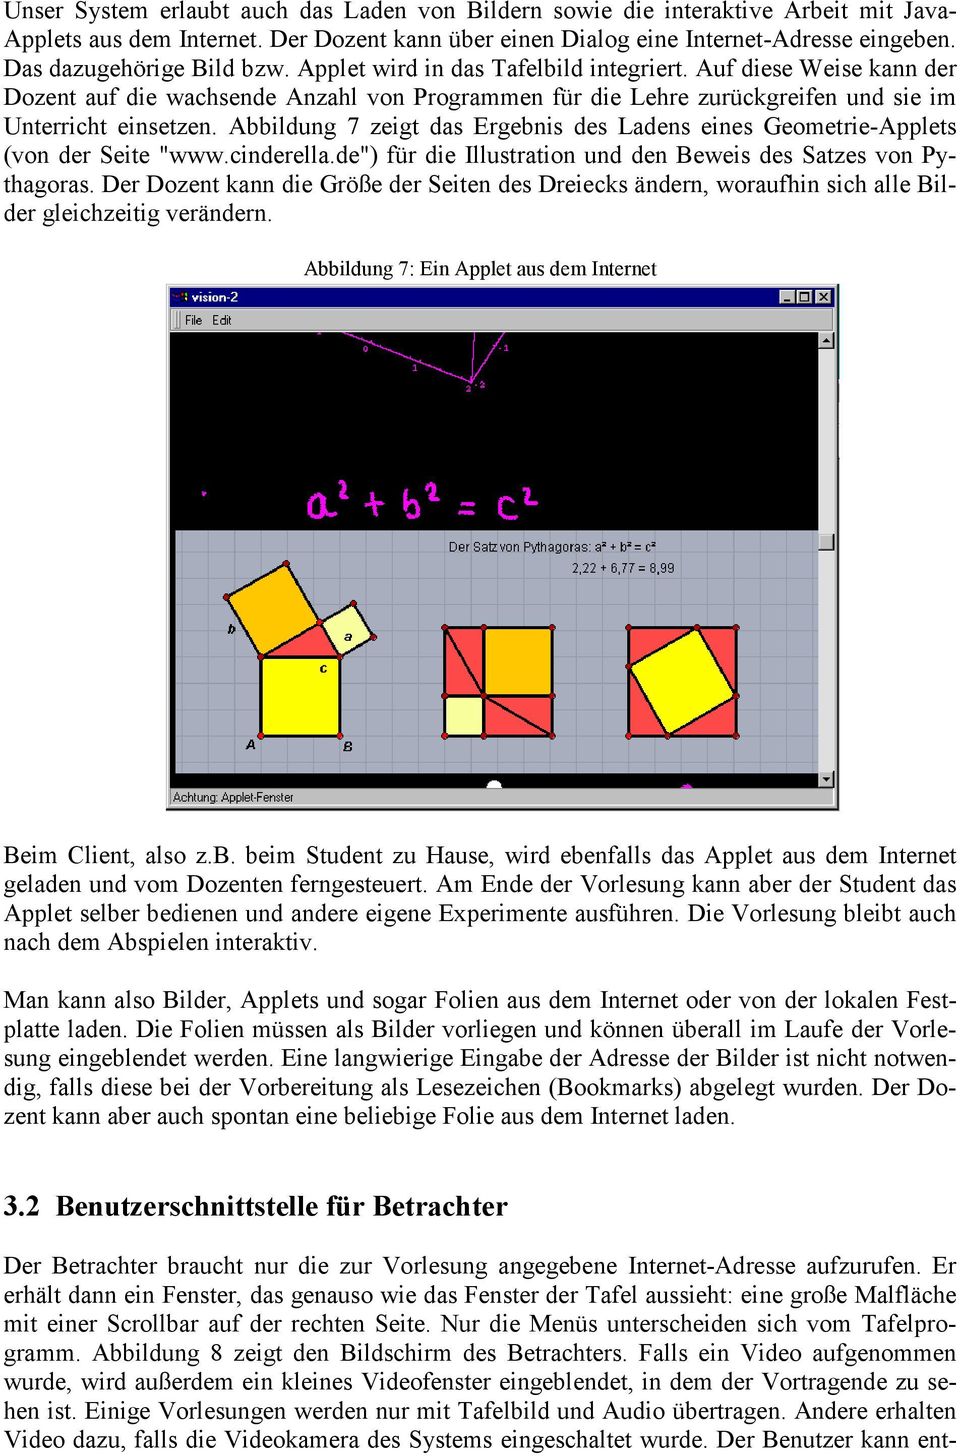 Abbildung 7 zeigt das Ergebnis des Ladens eines Geometrie-Applets (von der Seite "www.cinderella.de") für die Illustration und den Beweis des Satzes von Pythagoras.